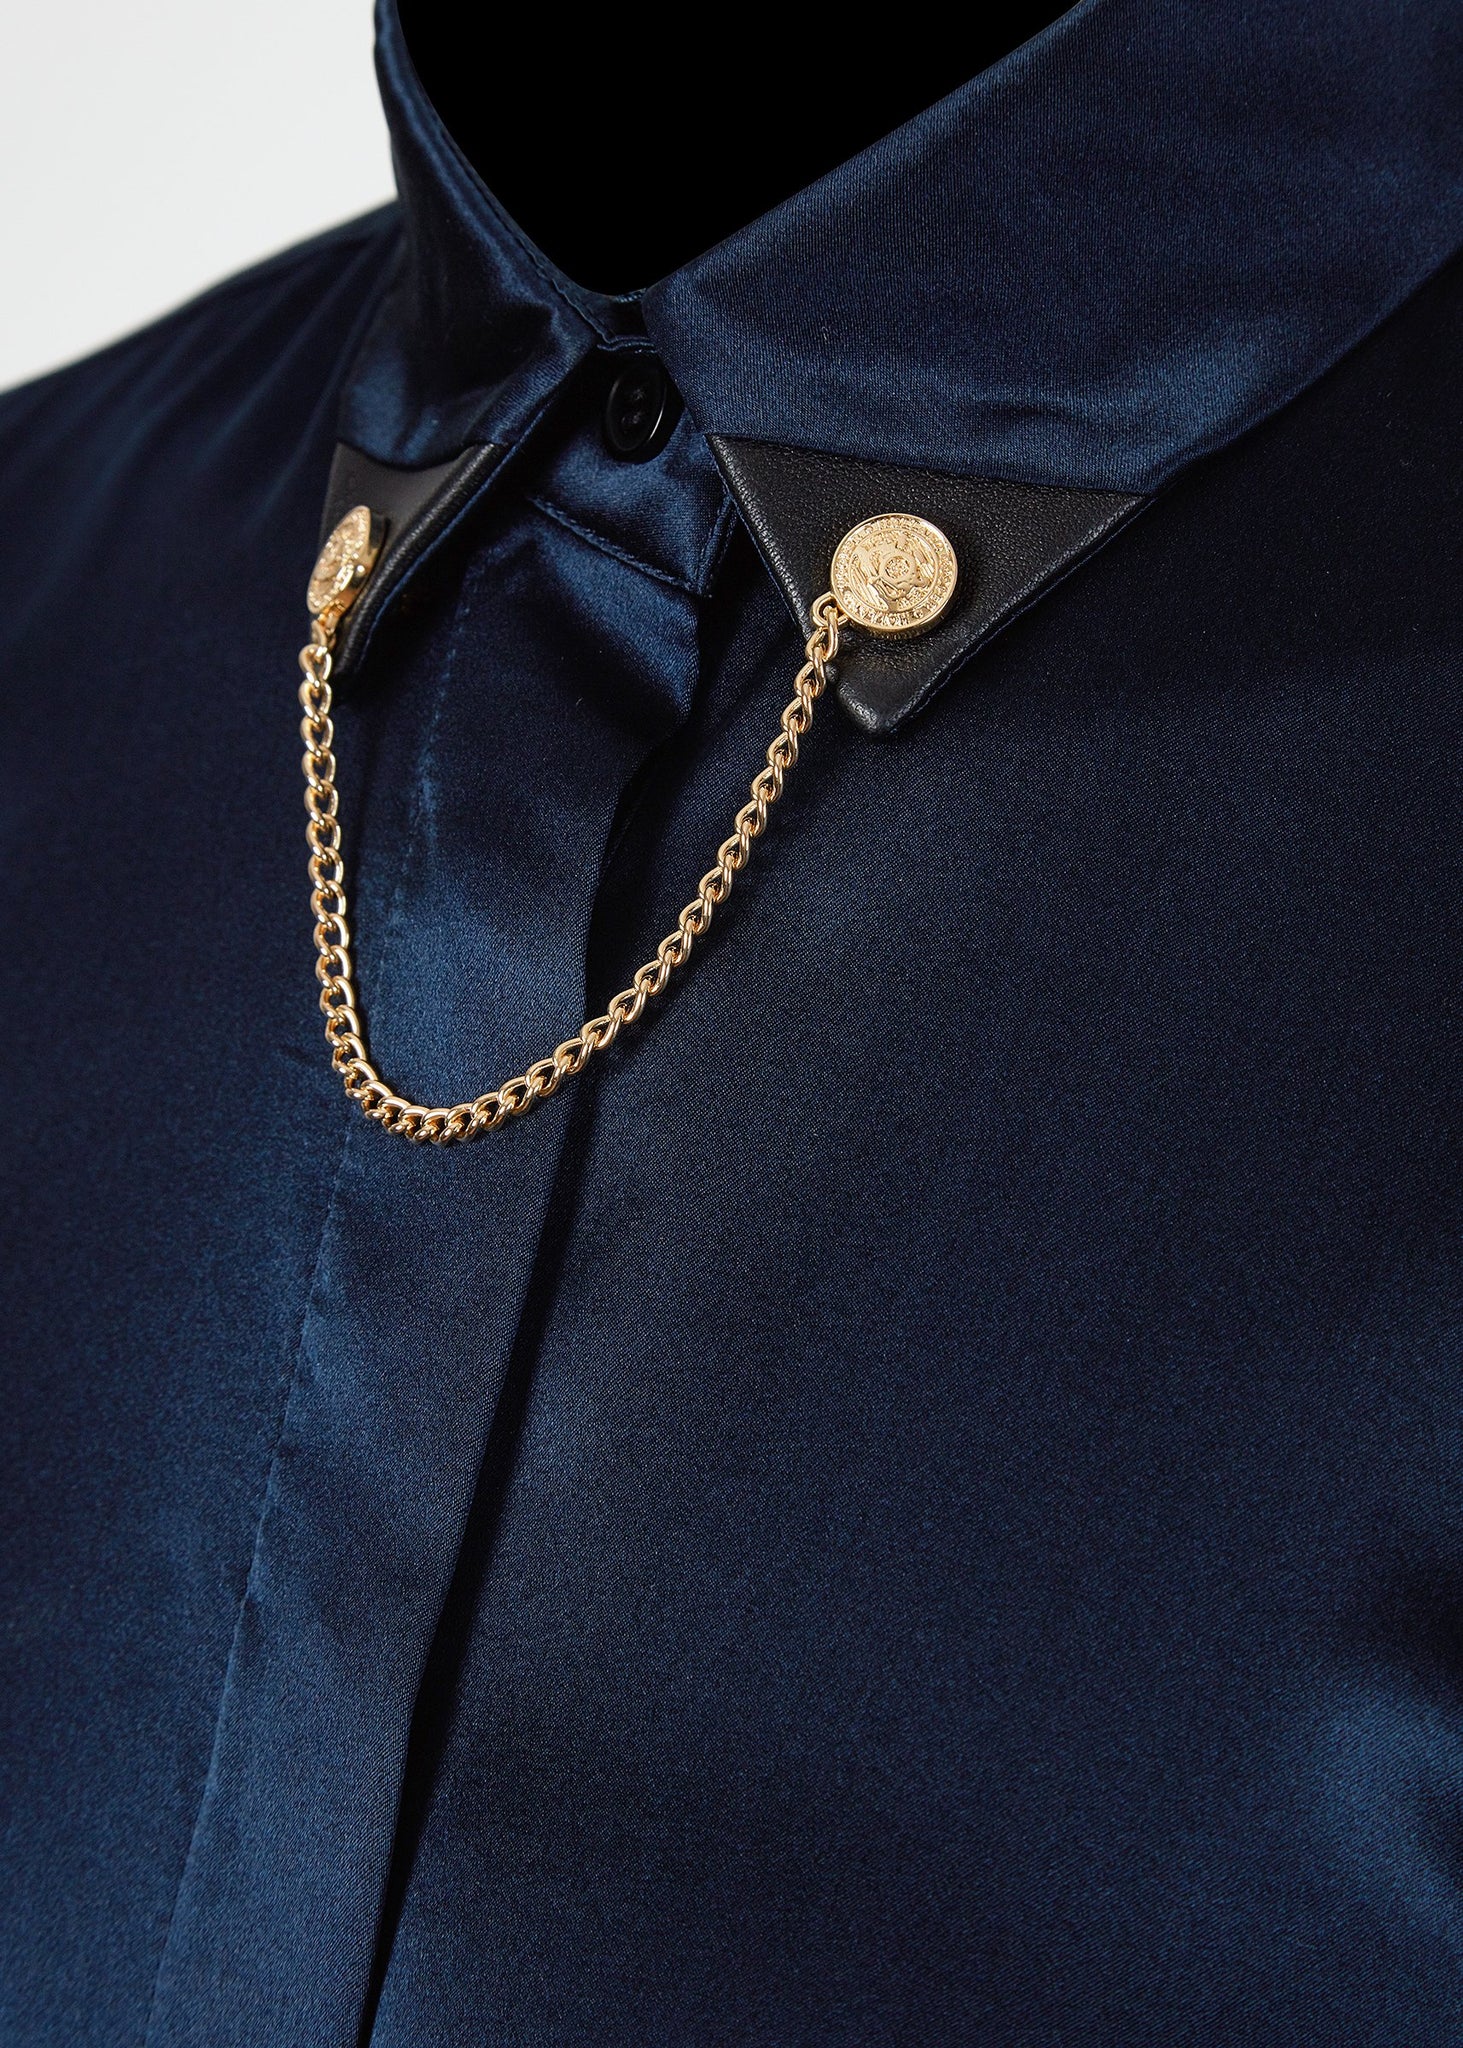 Silk Gold Chain Shirt (Sapphire Blue)